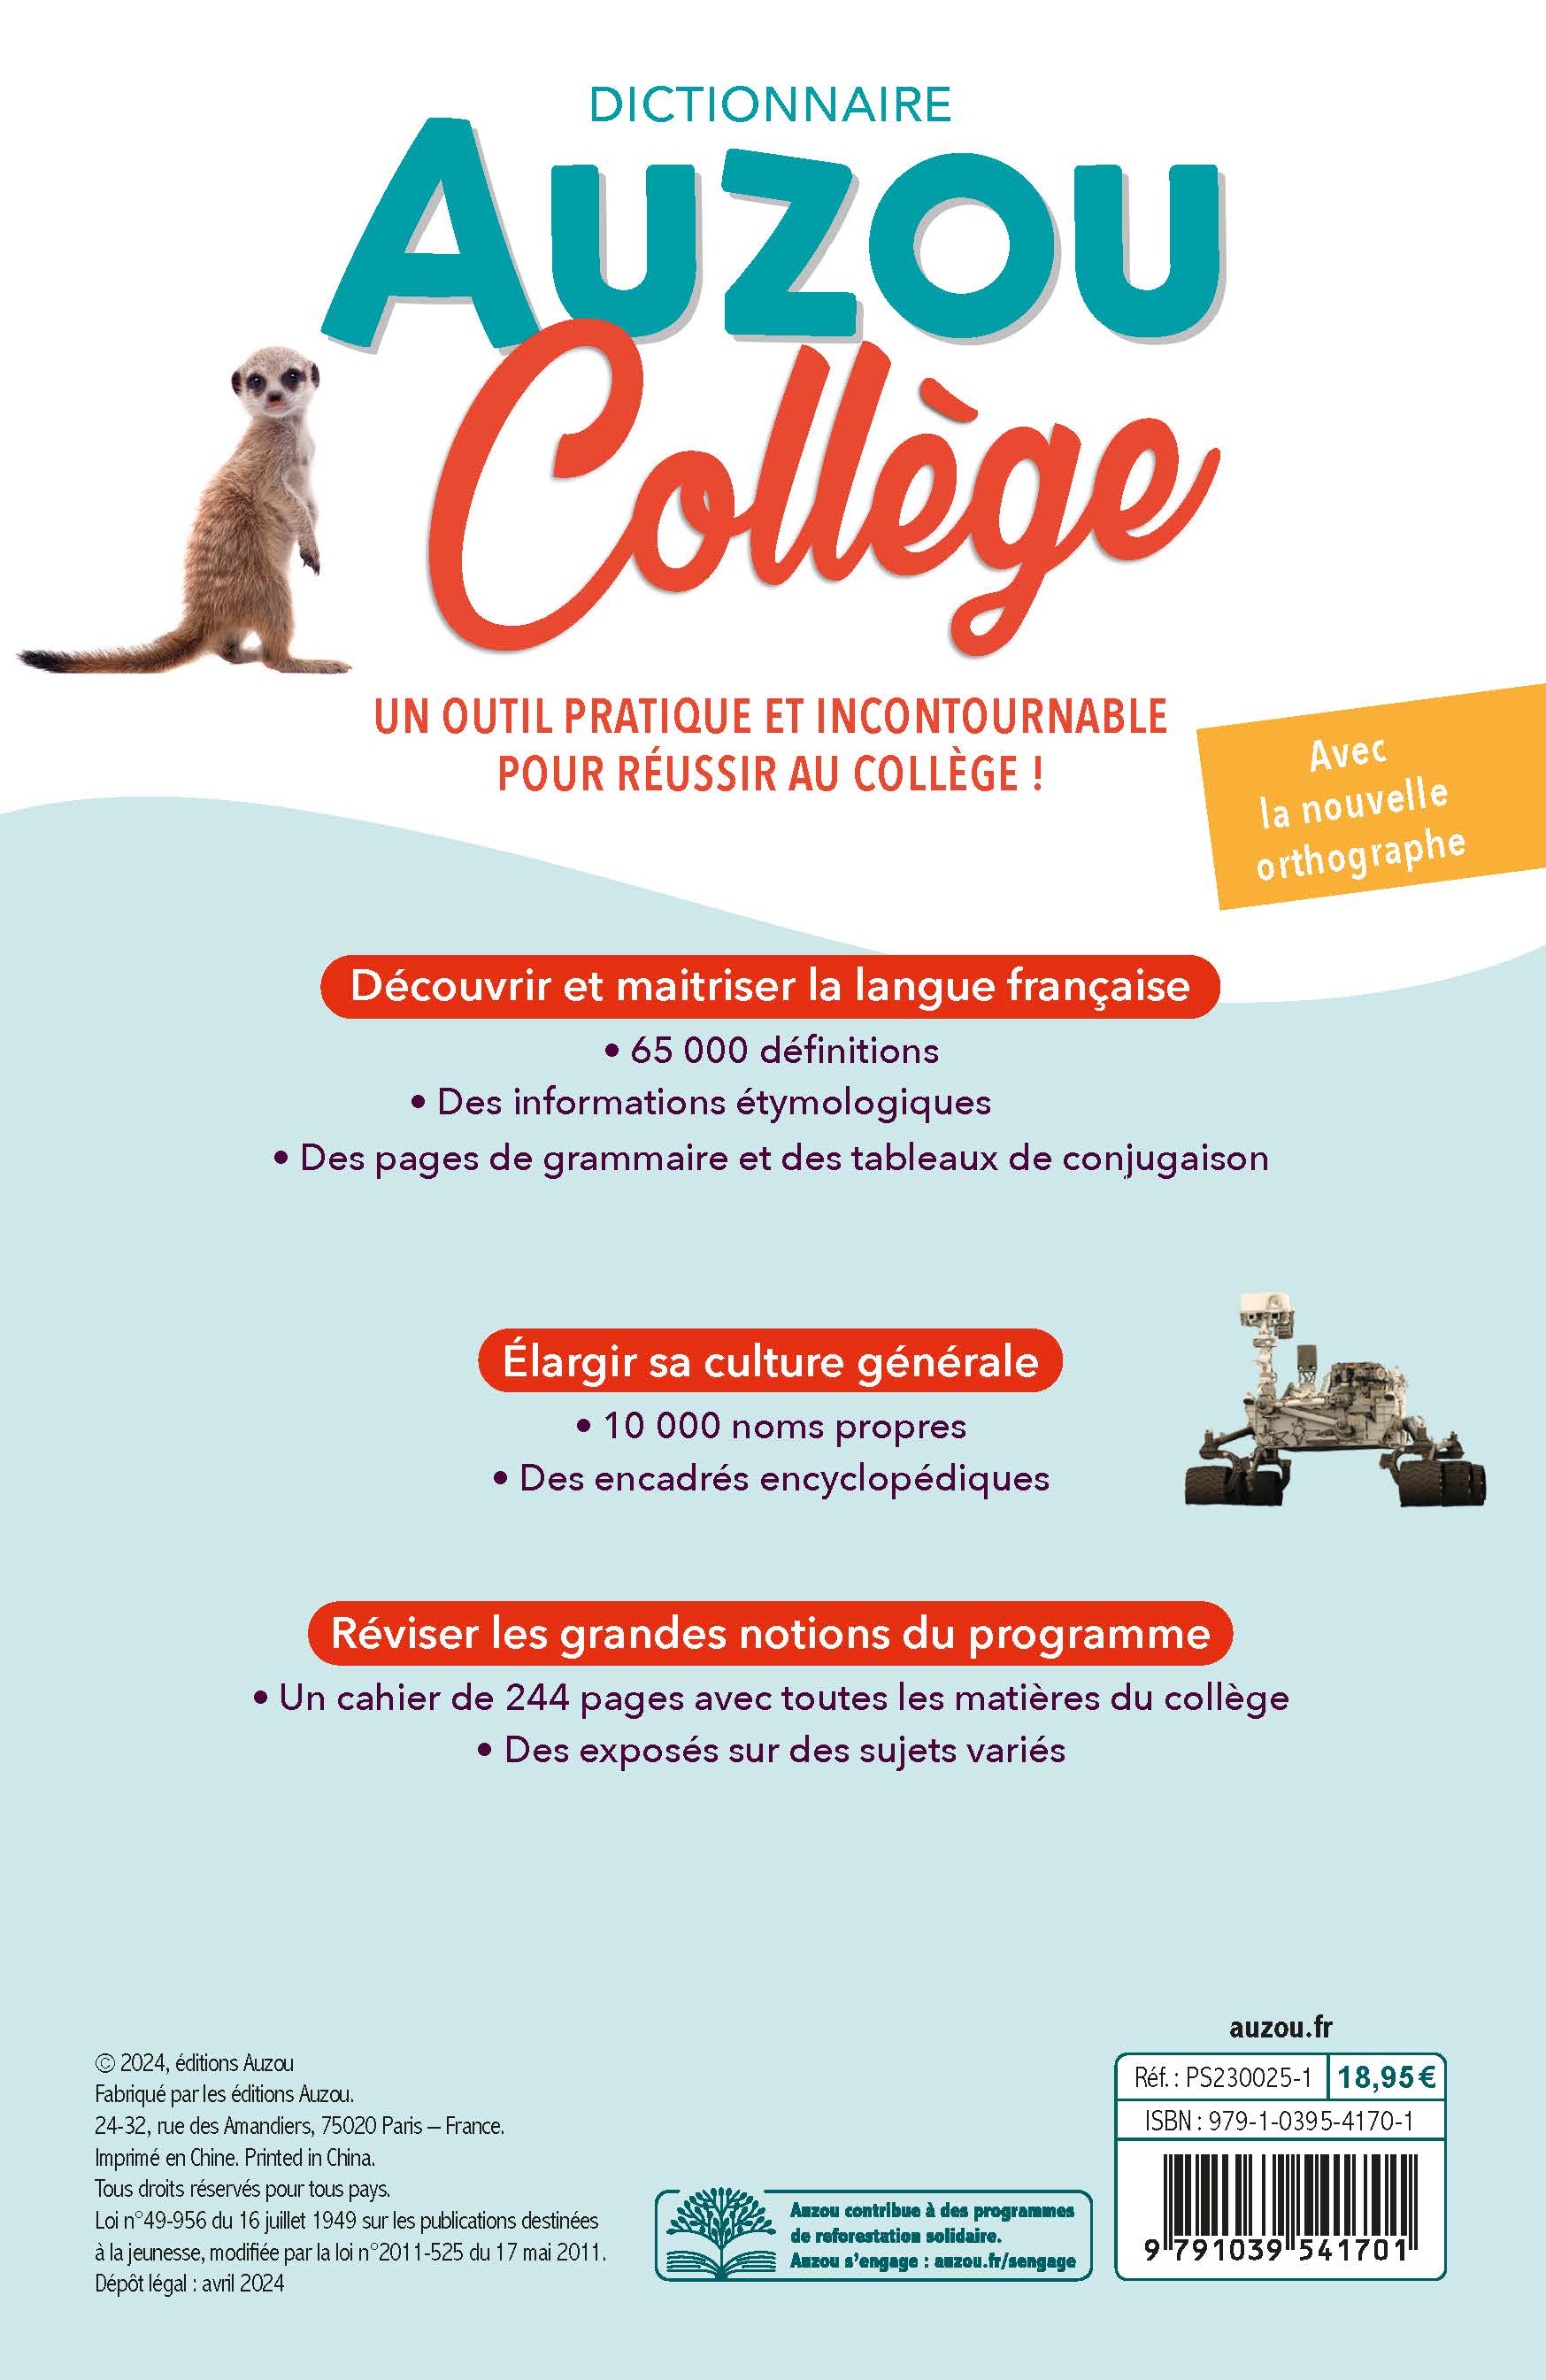 Dictionnaire Auzou College